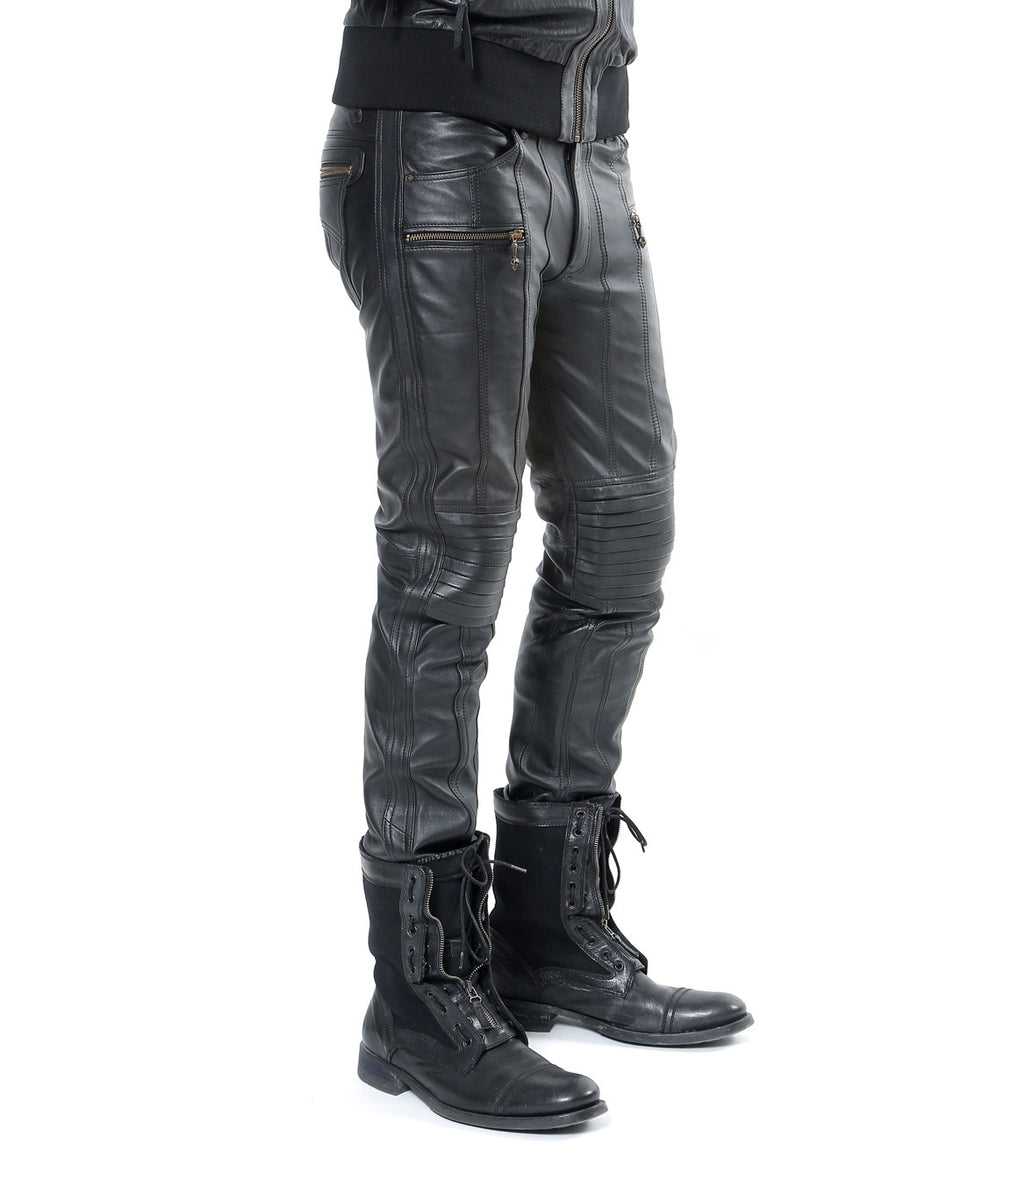 Leather Revolution Jeans – Jan Hilmer